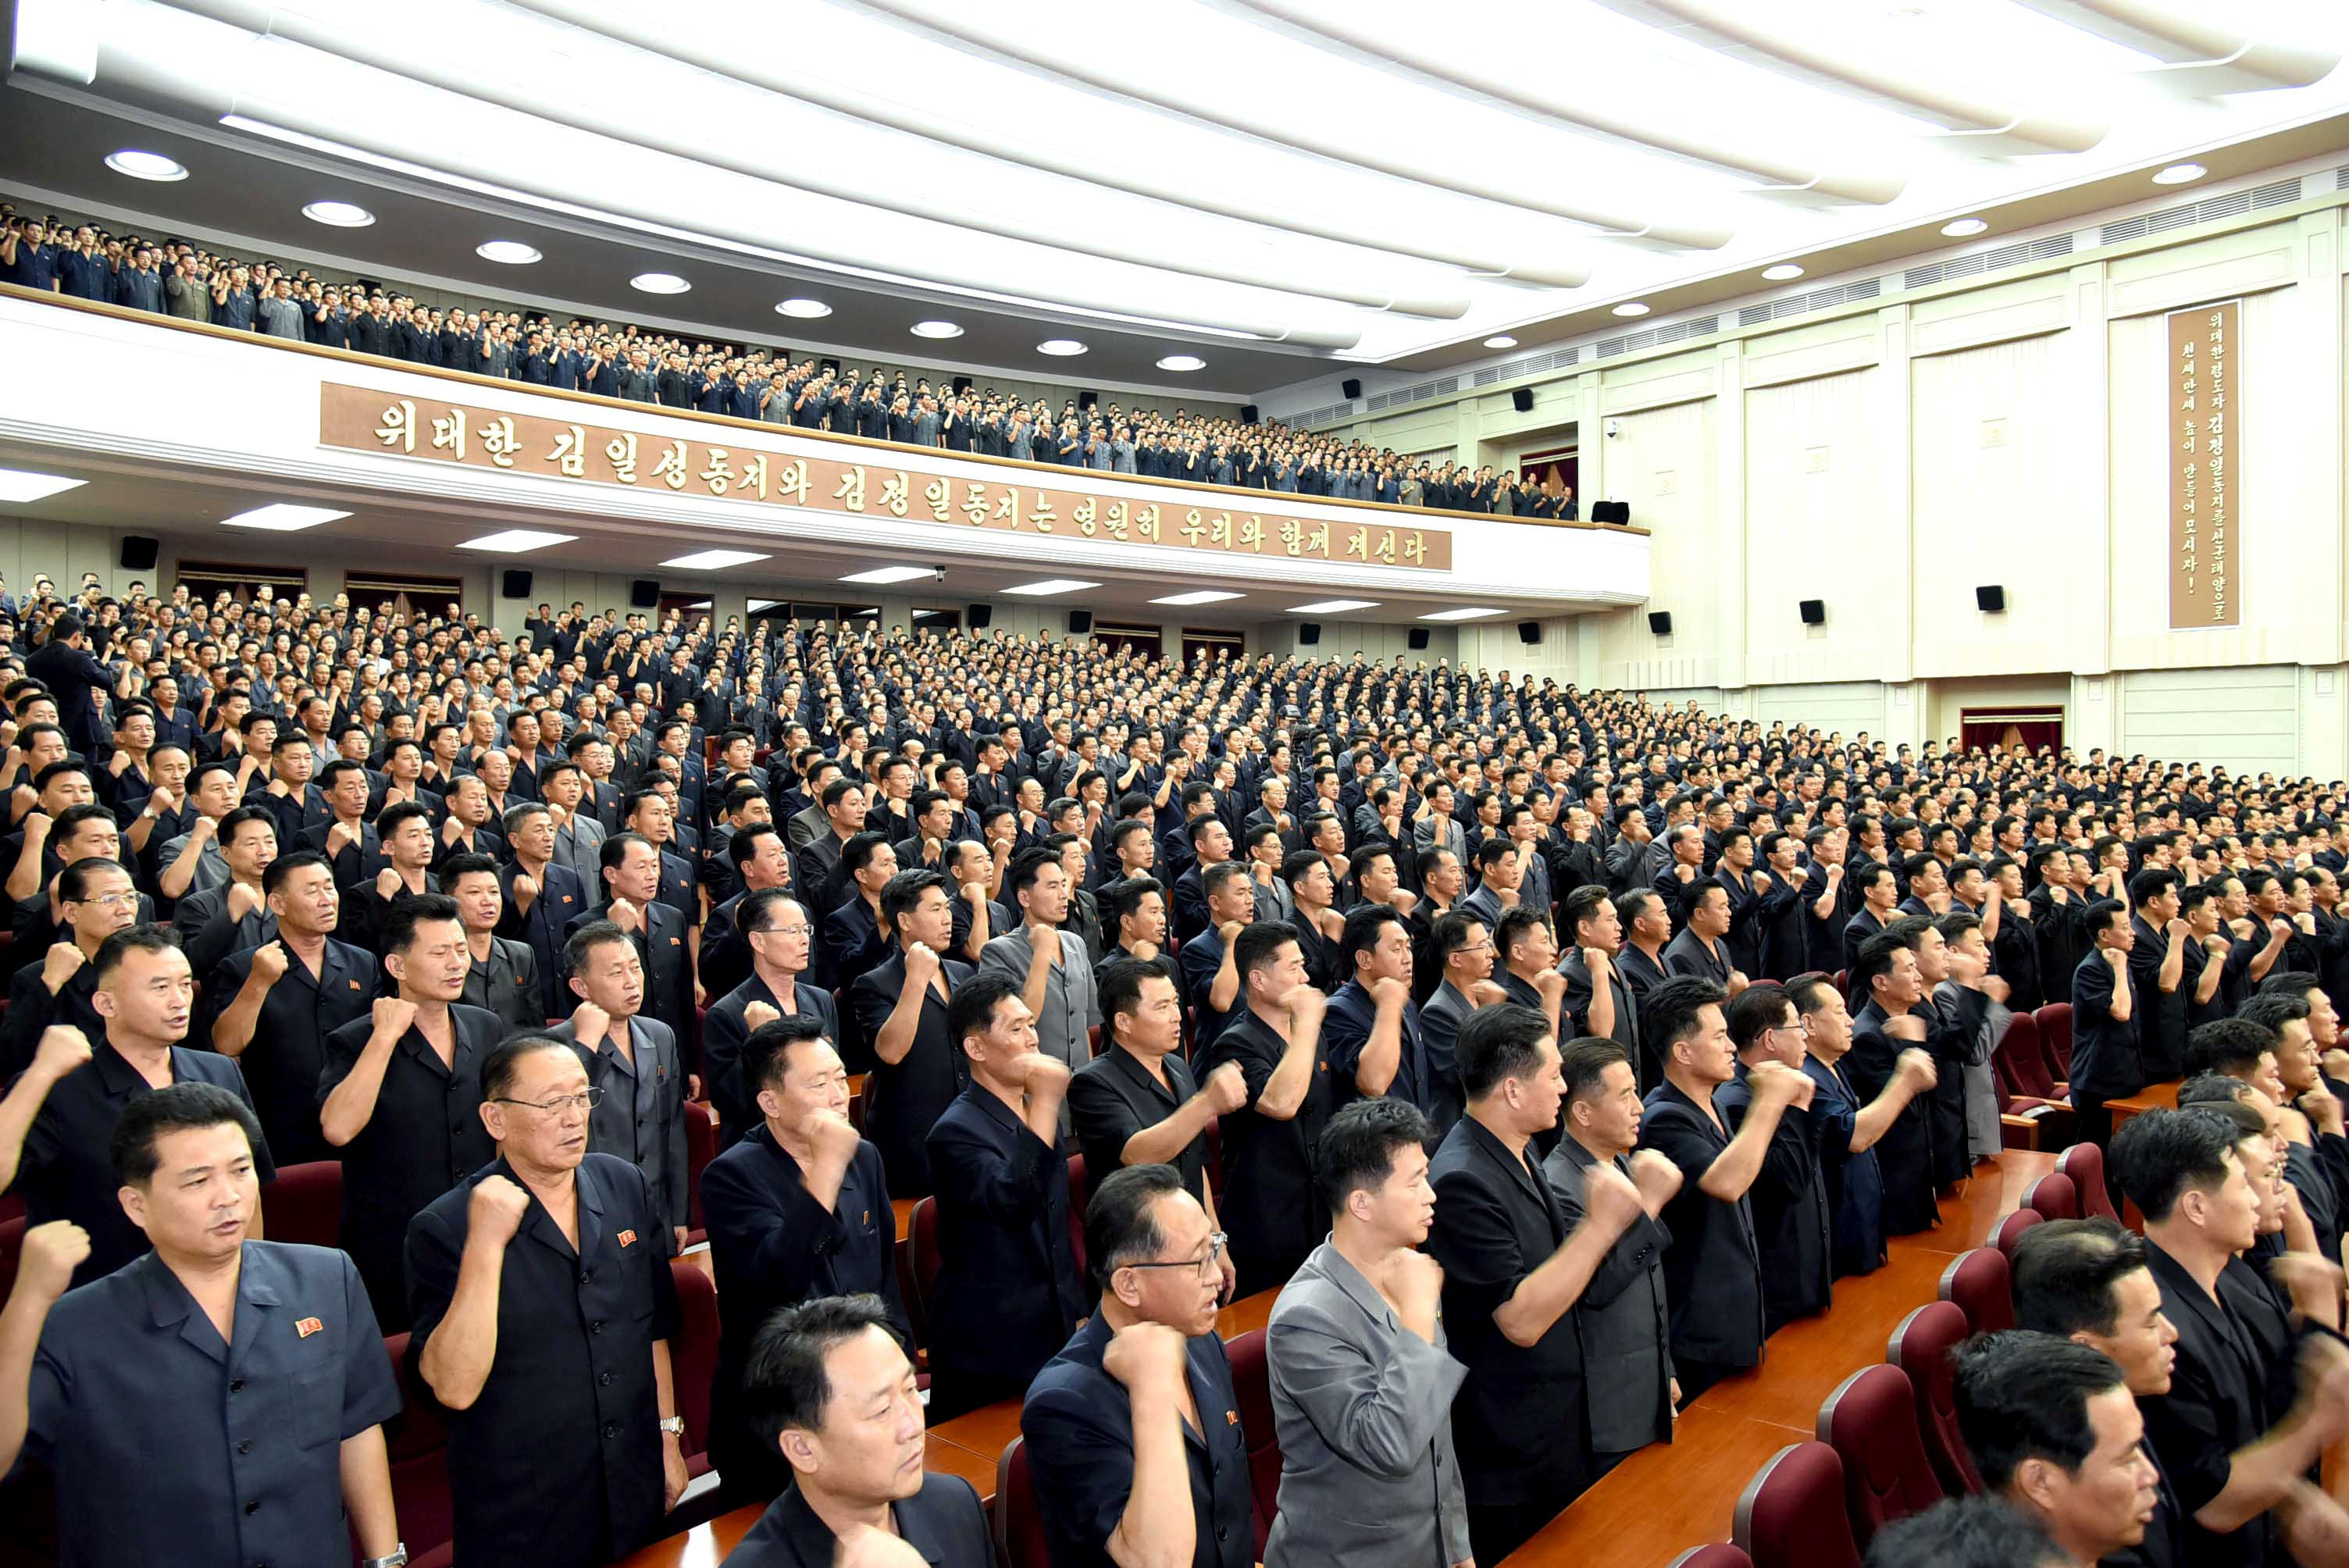 مئات المدنيين فى كوريا الشمالية يتعهدون بحرب مقدسة ضد الولايات المتحدة